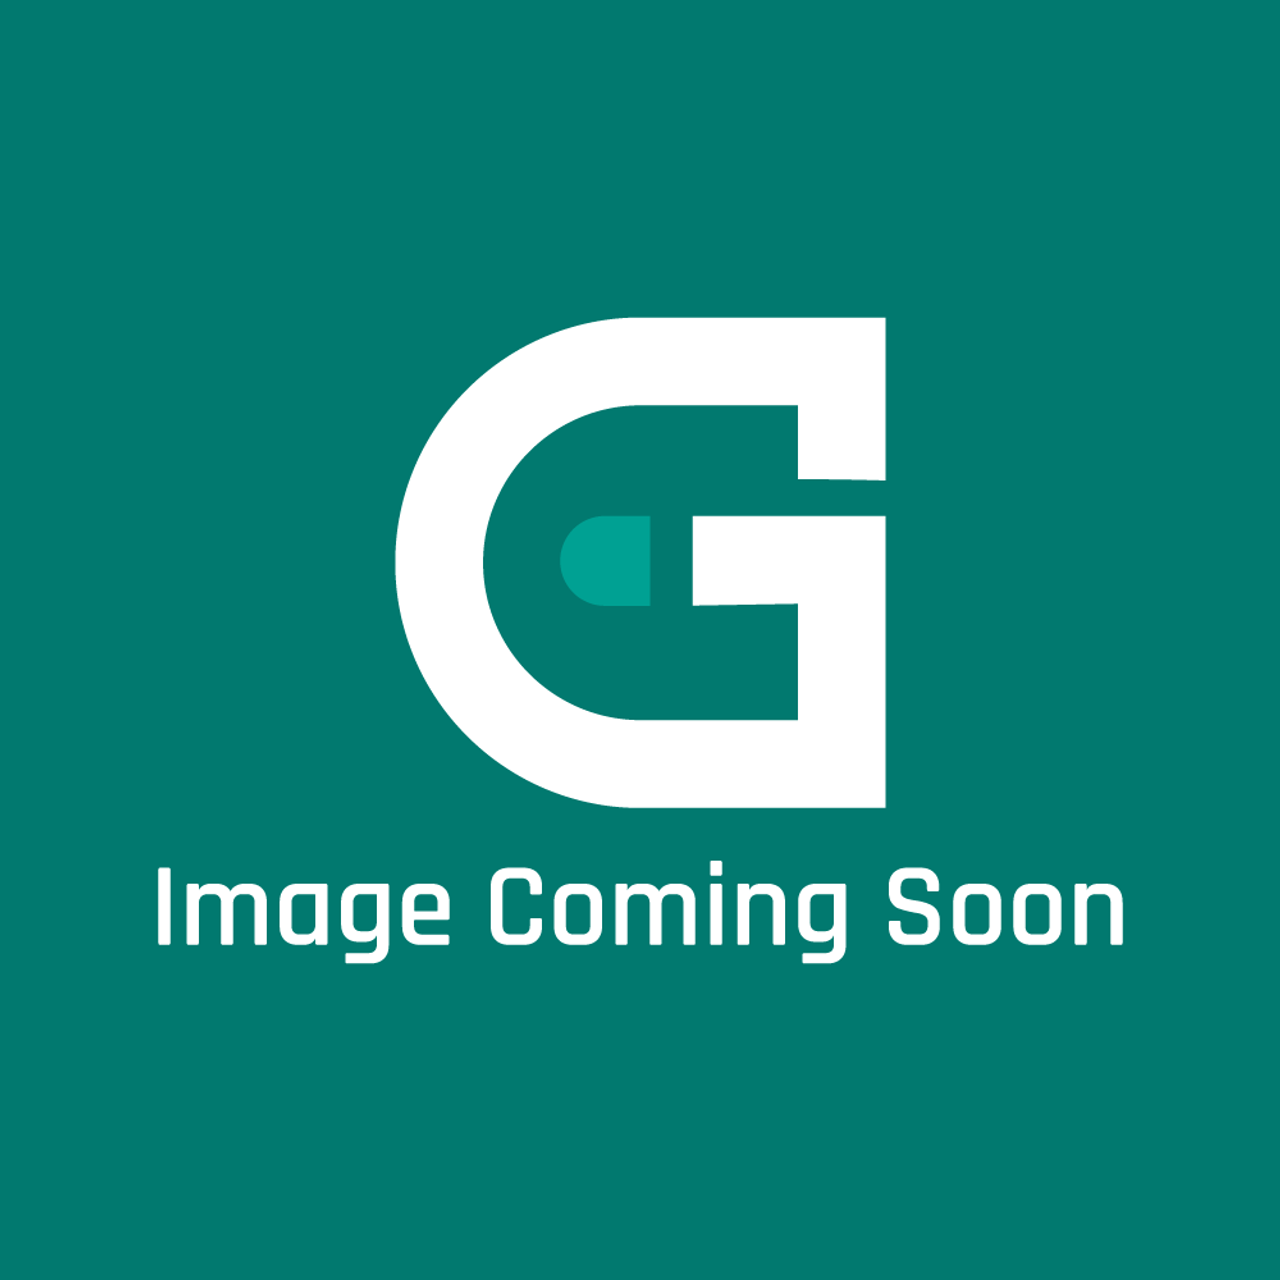 AGA Marvel SAG-P036294 - Legacy 44 Elec Ceramic Top Assy - Image Coming Soon!